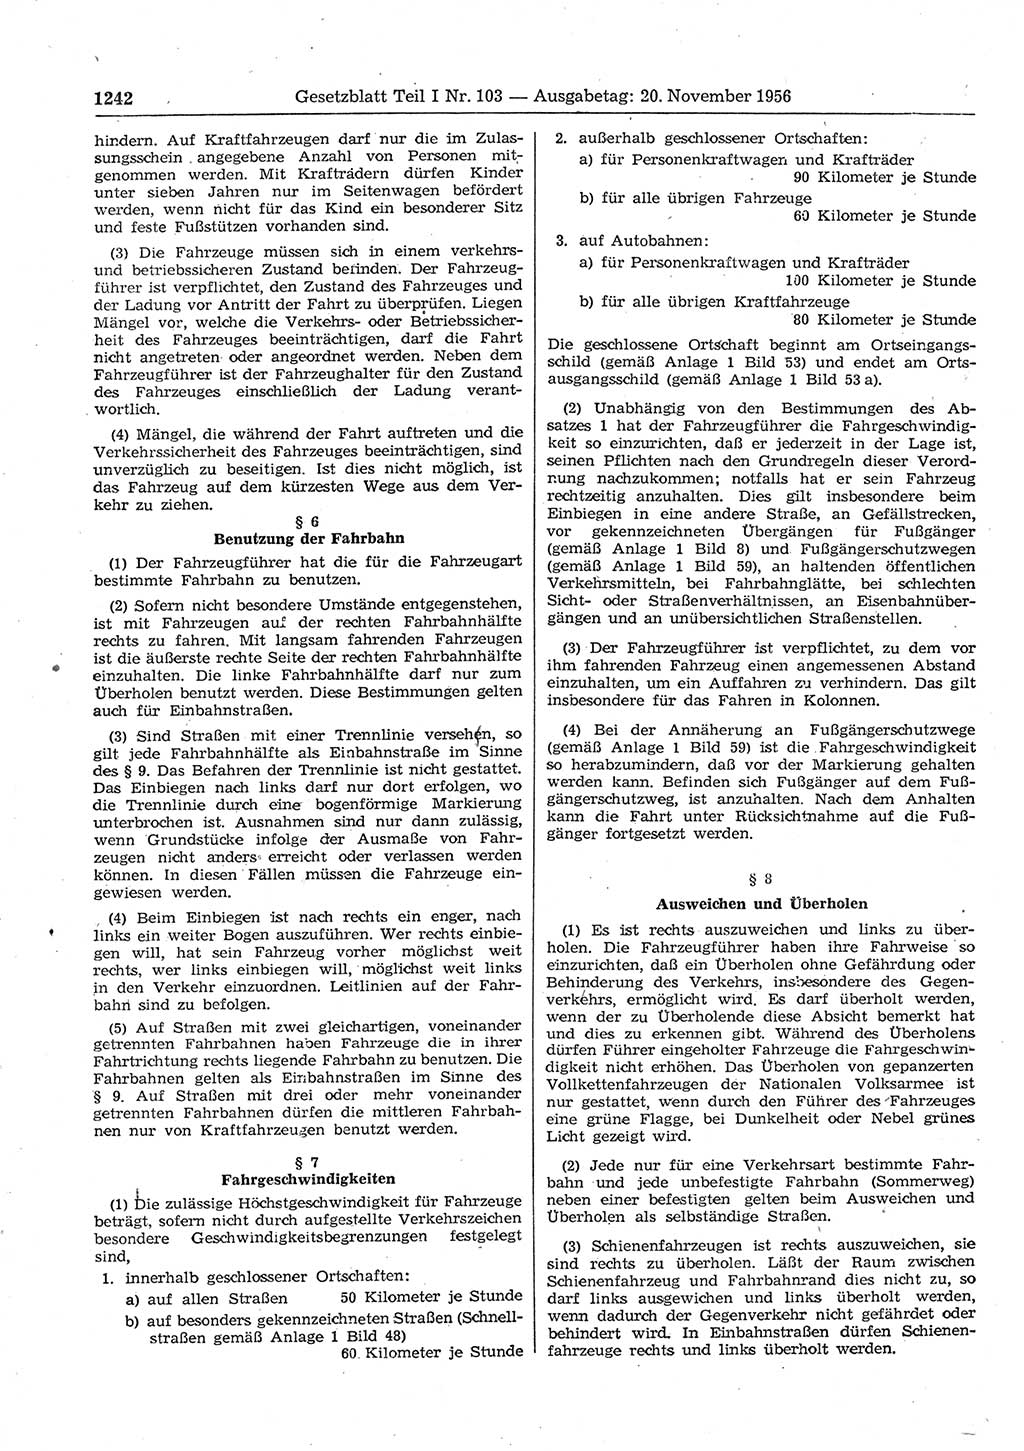 Gesetzblatt (GBl.) der Deutschen Demokratischen Republik (DDR) Teil Ⅰ 1956, Seite 1242 (GBl. DDR Ⅰ 1956, S. 1242)